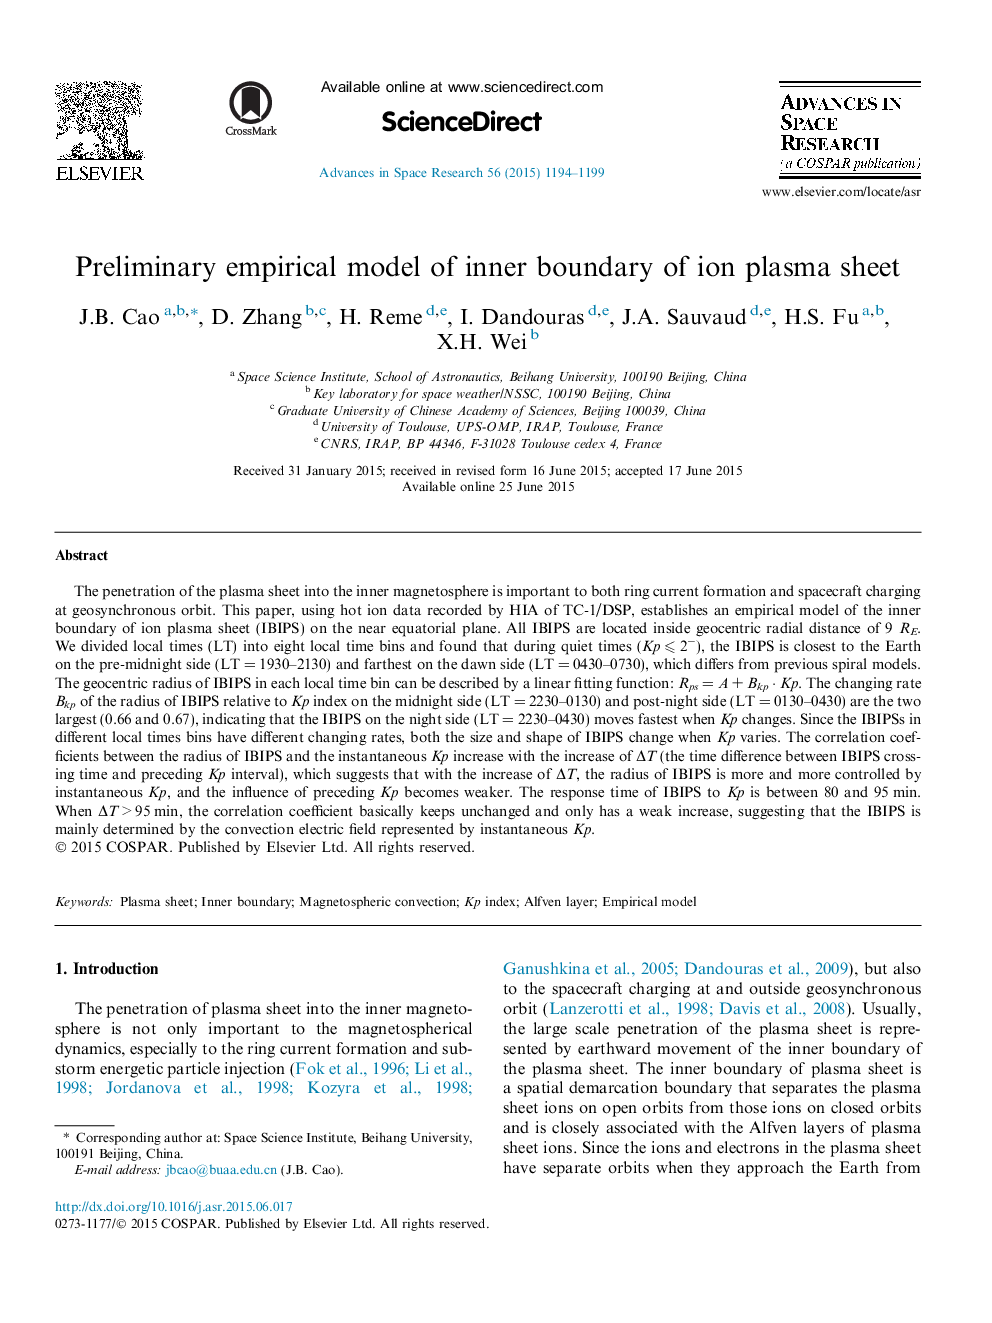 Preliminary empirical model of inner boundary of ion plasma sheet